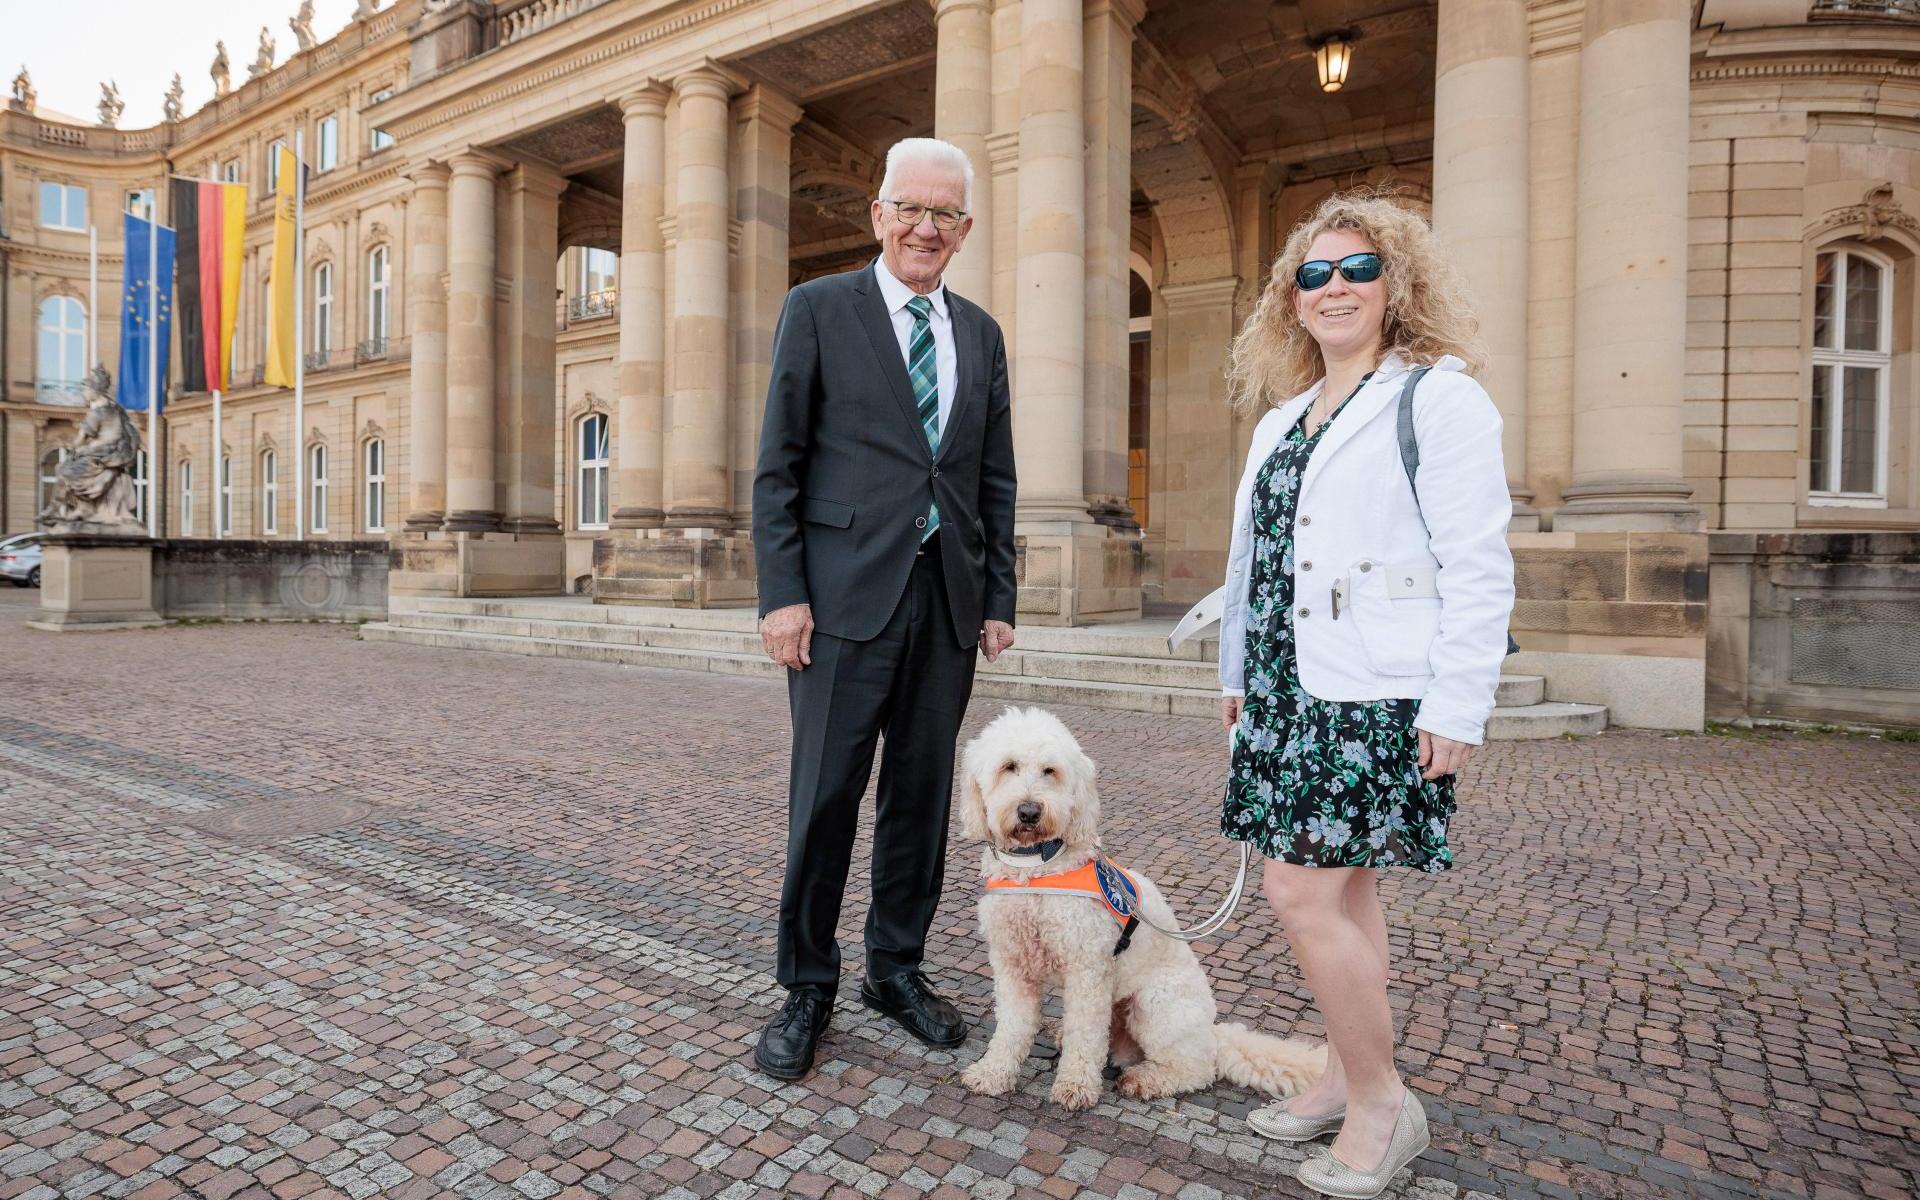 Winfried Kretschmann, der Ministerpräsident von Baden-Württemberg, steht links im Bild. Er lächelt in die Kamera. Er ist Mitte siebzig, hat weiße Haare, trägt eine Brille und einen schwarzen Anzug mit Krawatte. Rechts neben ihm sitzt der Hund Harry, ein Goldendoodle mit blondem, lockigem Fell. Er trägt eine Kenndecke und wird gehalten von Lisa Mümmler, rechts neben ihm. Sie ist eine junge Frau mit blondgelocktem Haar. Sie trägt eine schwarze Sonnenbrille, ein geblümtes Kleid und eine weiße Jacke. Sie lächel